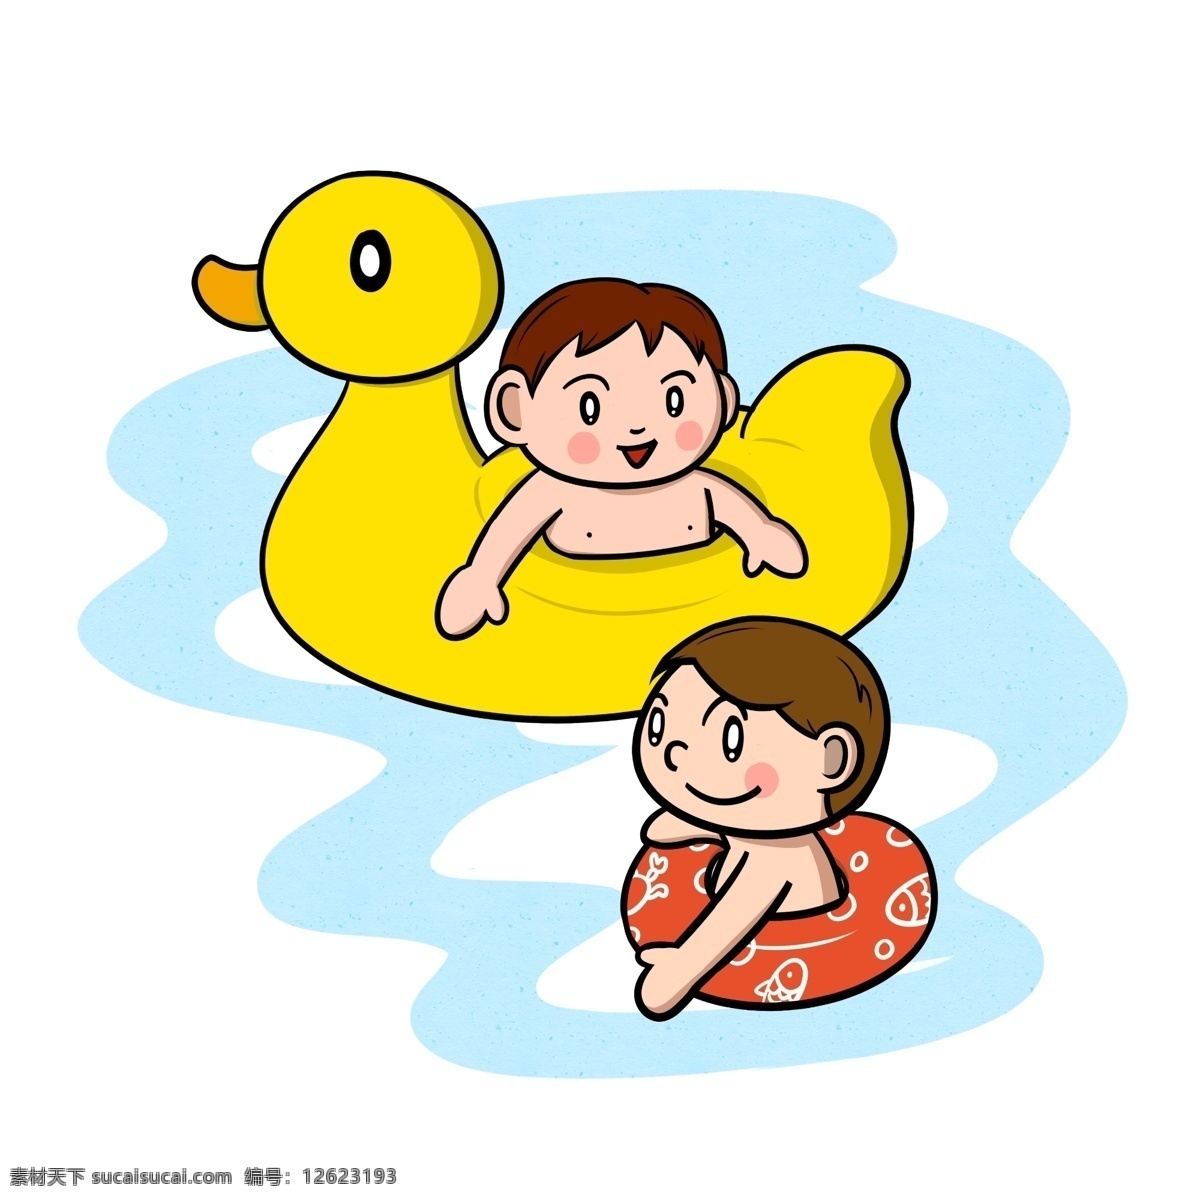 卡通 夏季 儿童 游泳 嬉戏 透明 底 夏天 玩耍 海边 海边人物 夏季人物 夏天人物 卡通人物 卡通夏季